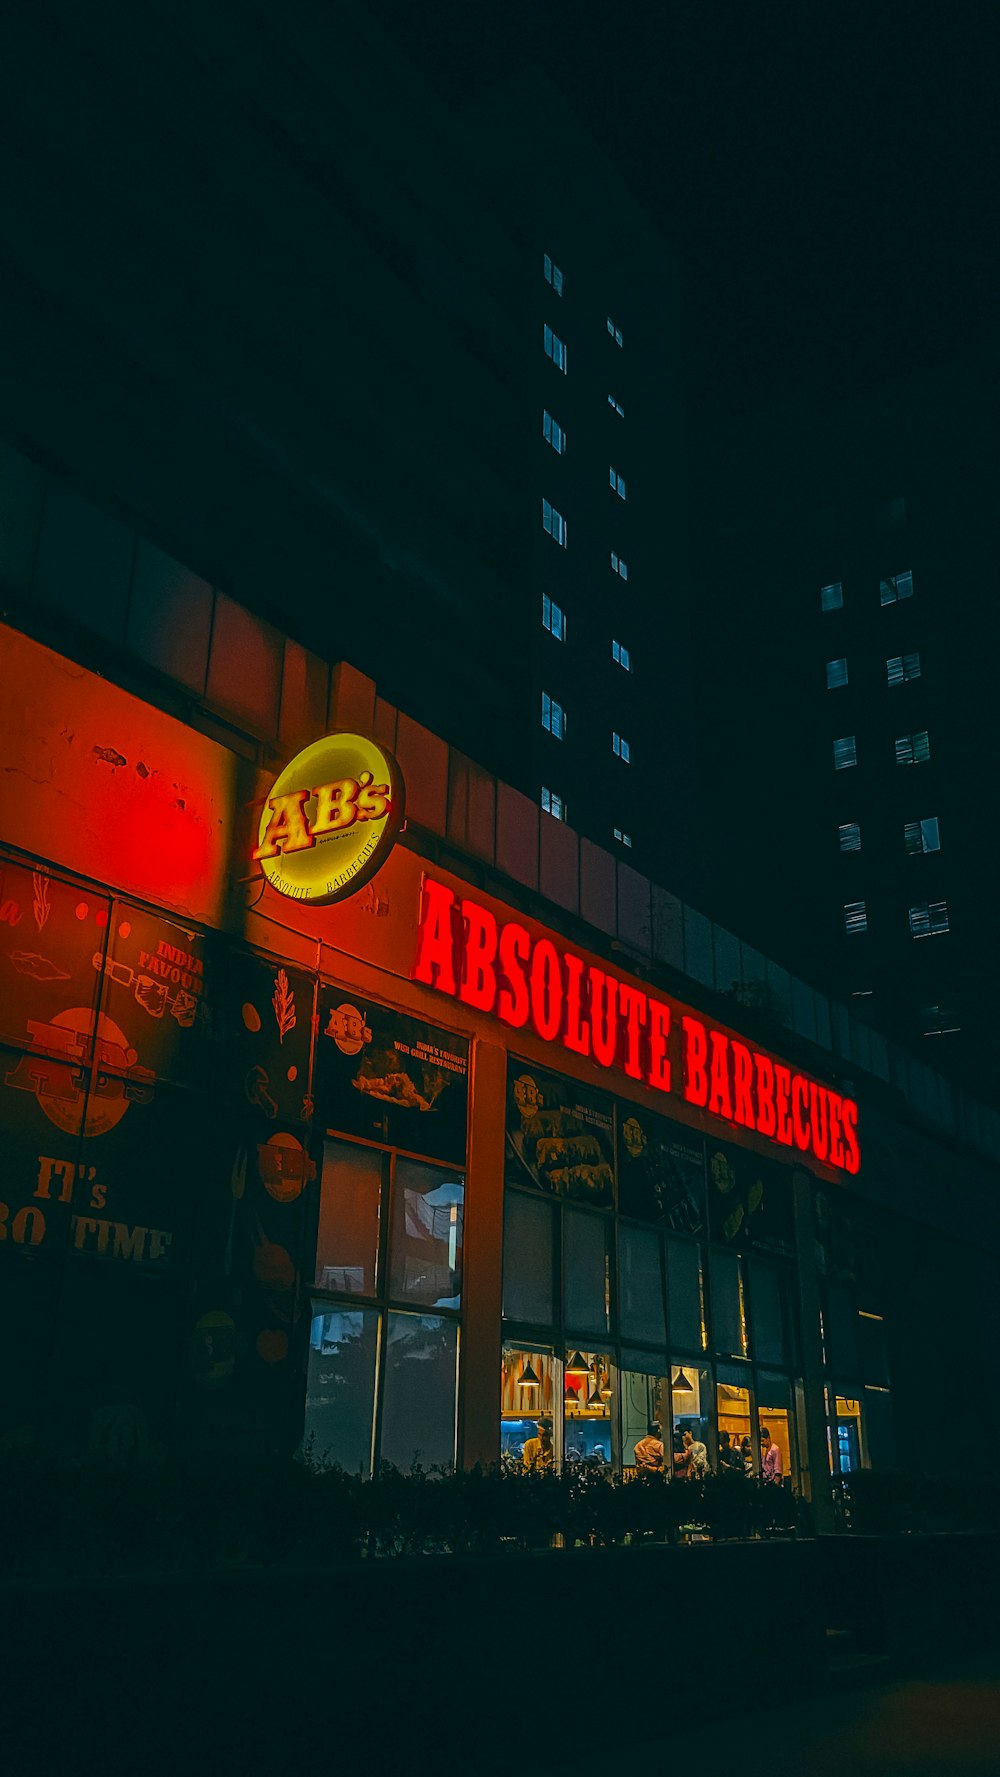 Ein angezündeter Grill bei Nacht in einer Stadt